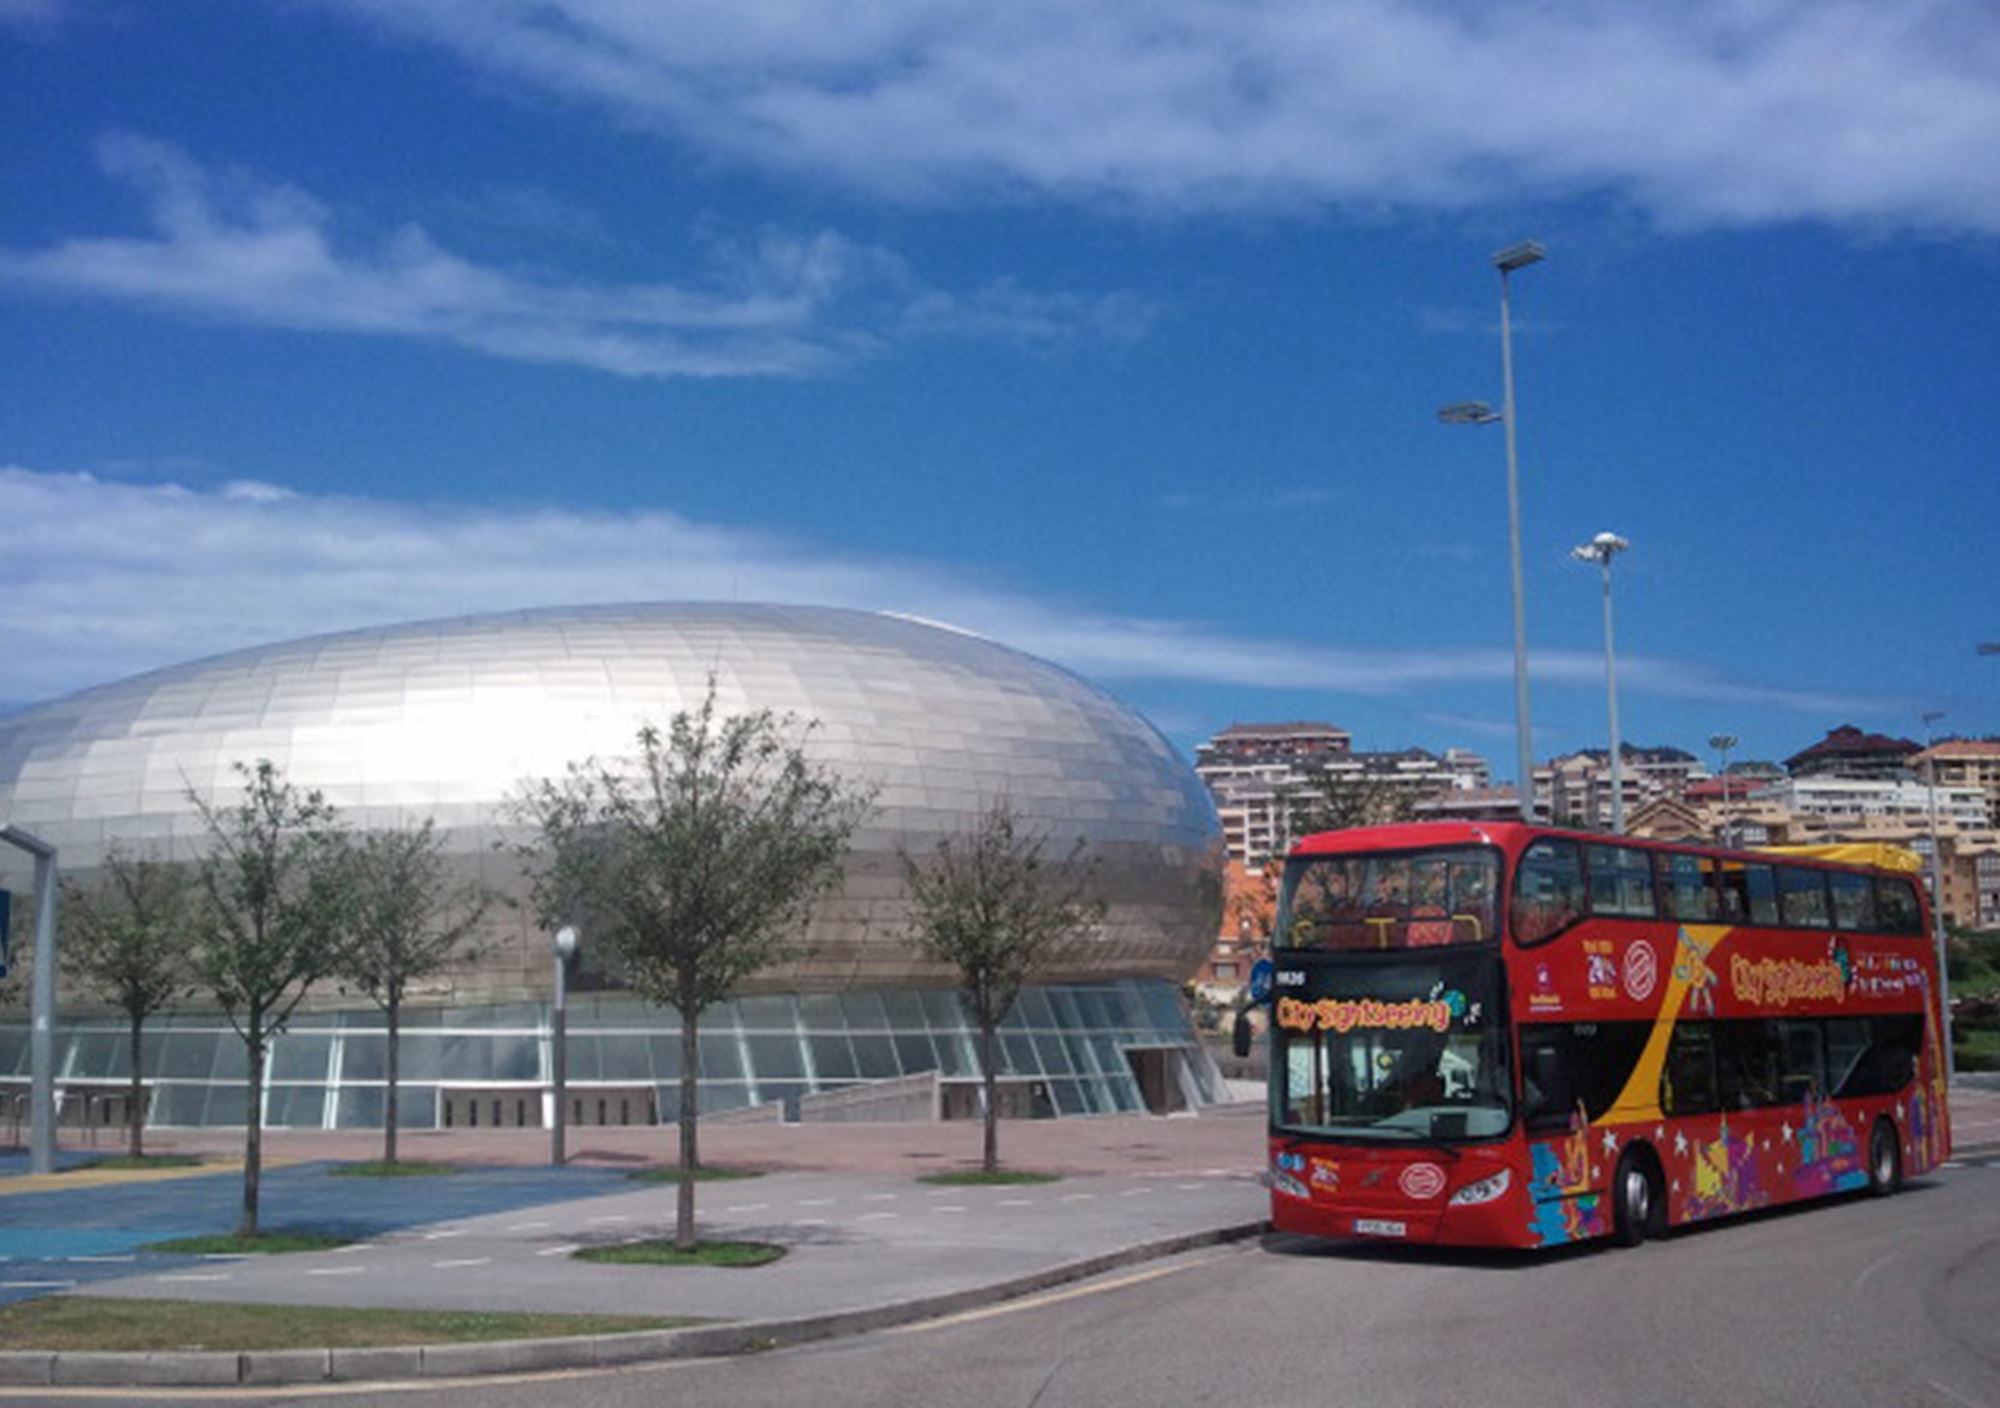 réservations réserver guidées tours Bus Touristique City Sightseeing Santander billets visiter